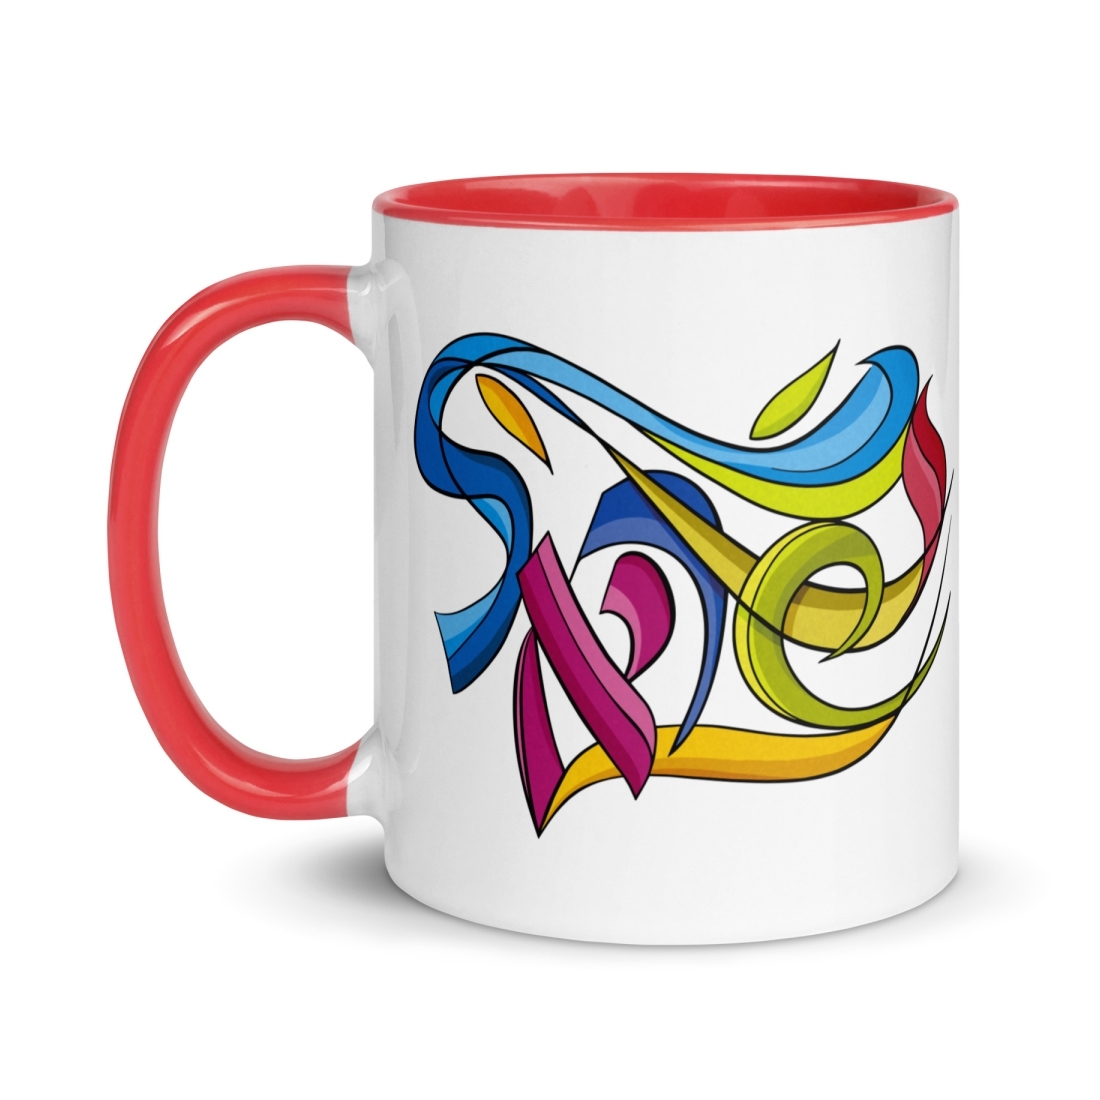 Israel Colorful Mug - 1